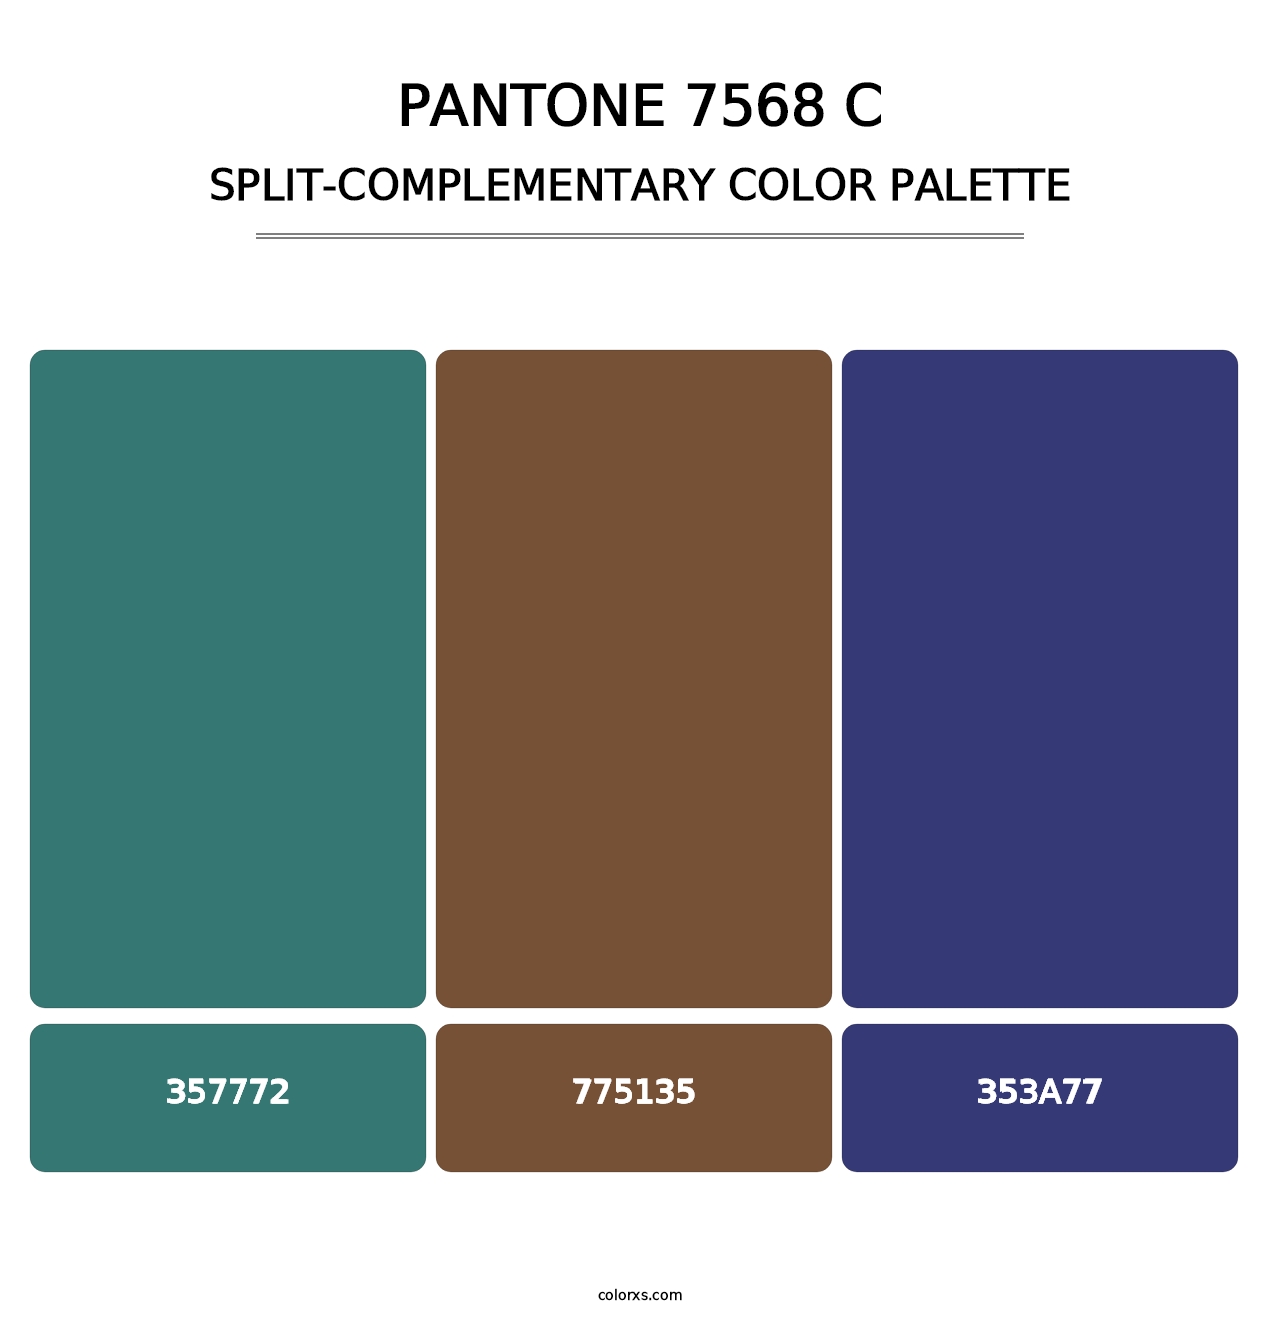 PANTONE 7568 C - Split-Complementary Color Palette